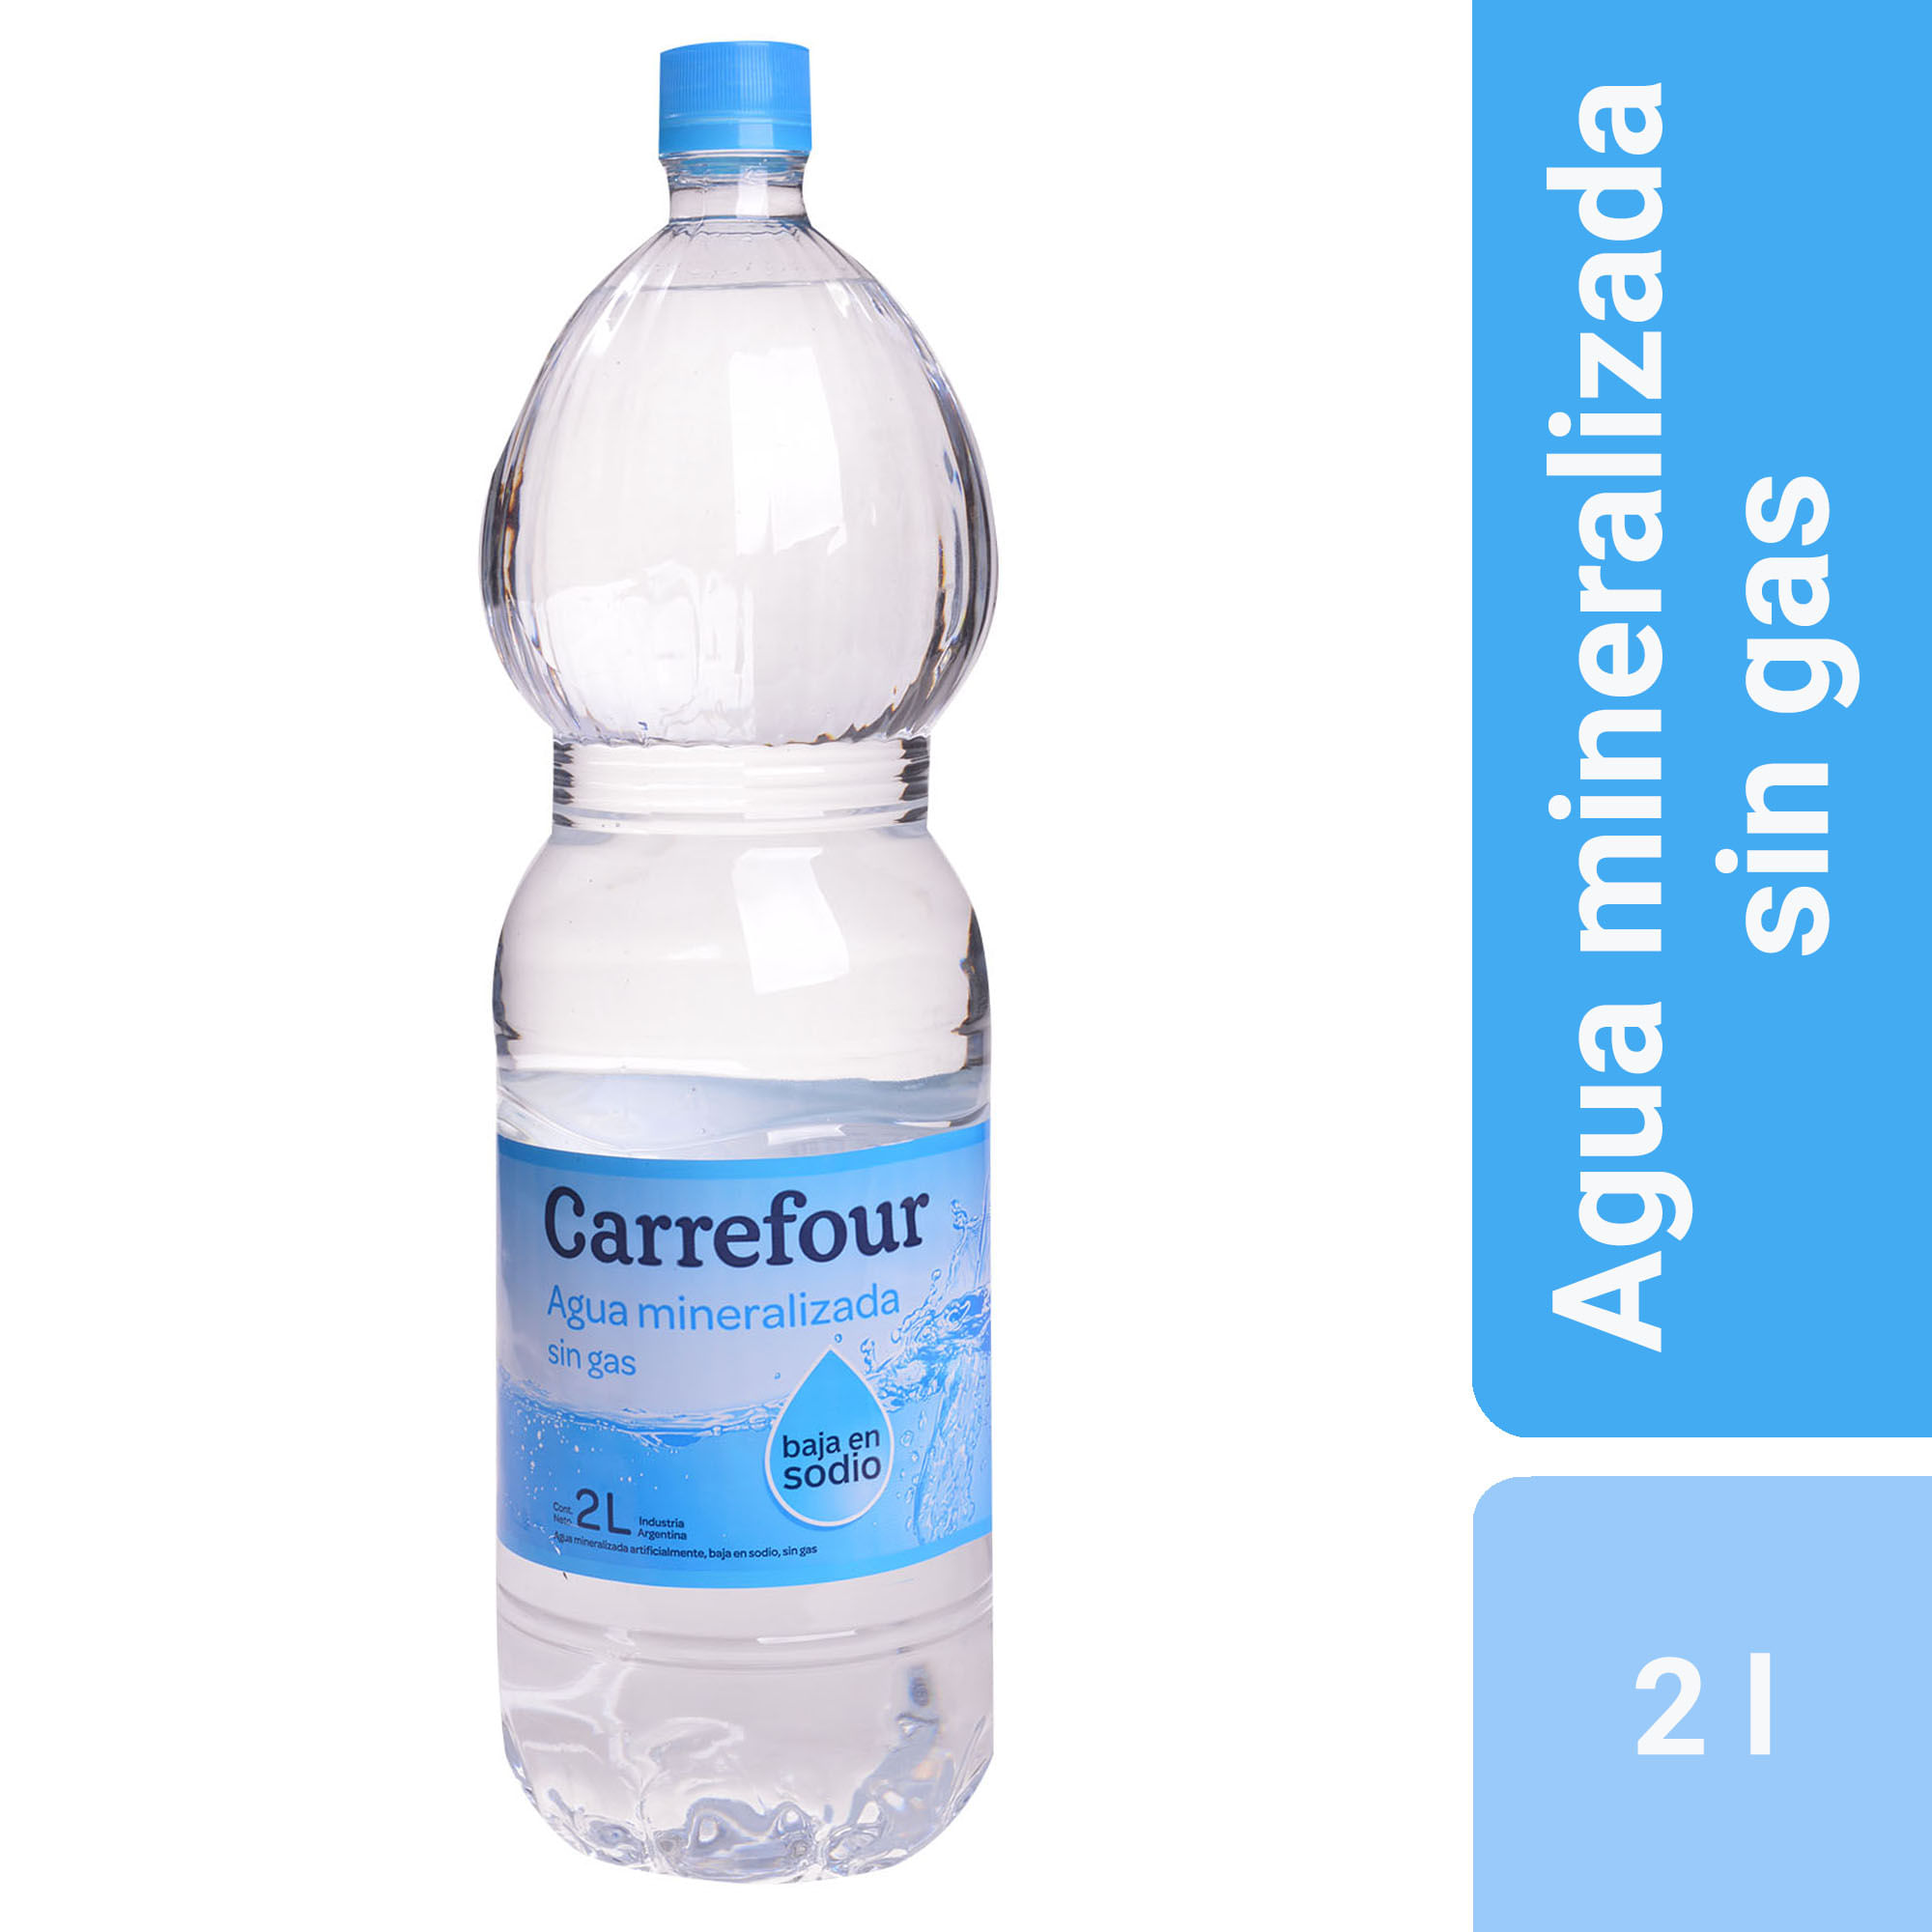 Doblez lanzamiento Imperio Agua mineralizada sin gas Carrefour bajo sodio 2 l. - Carrefour